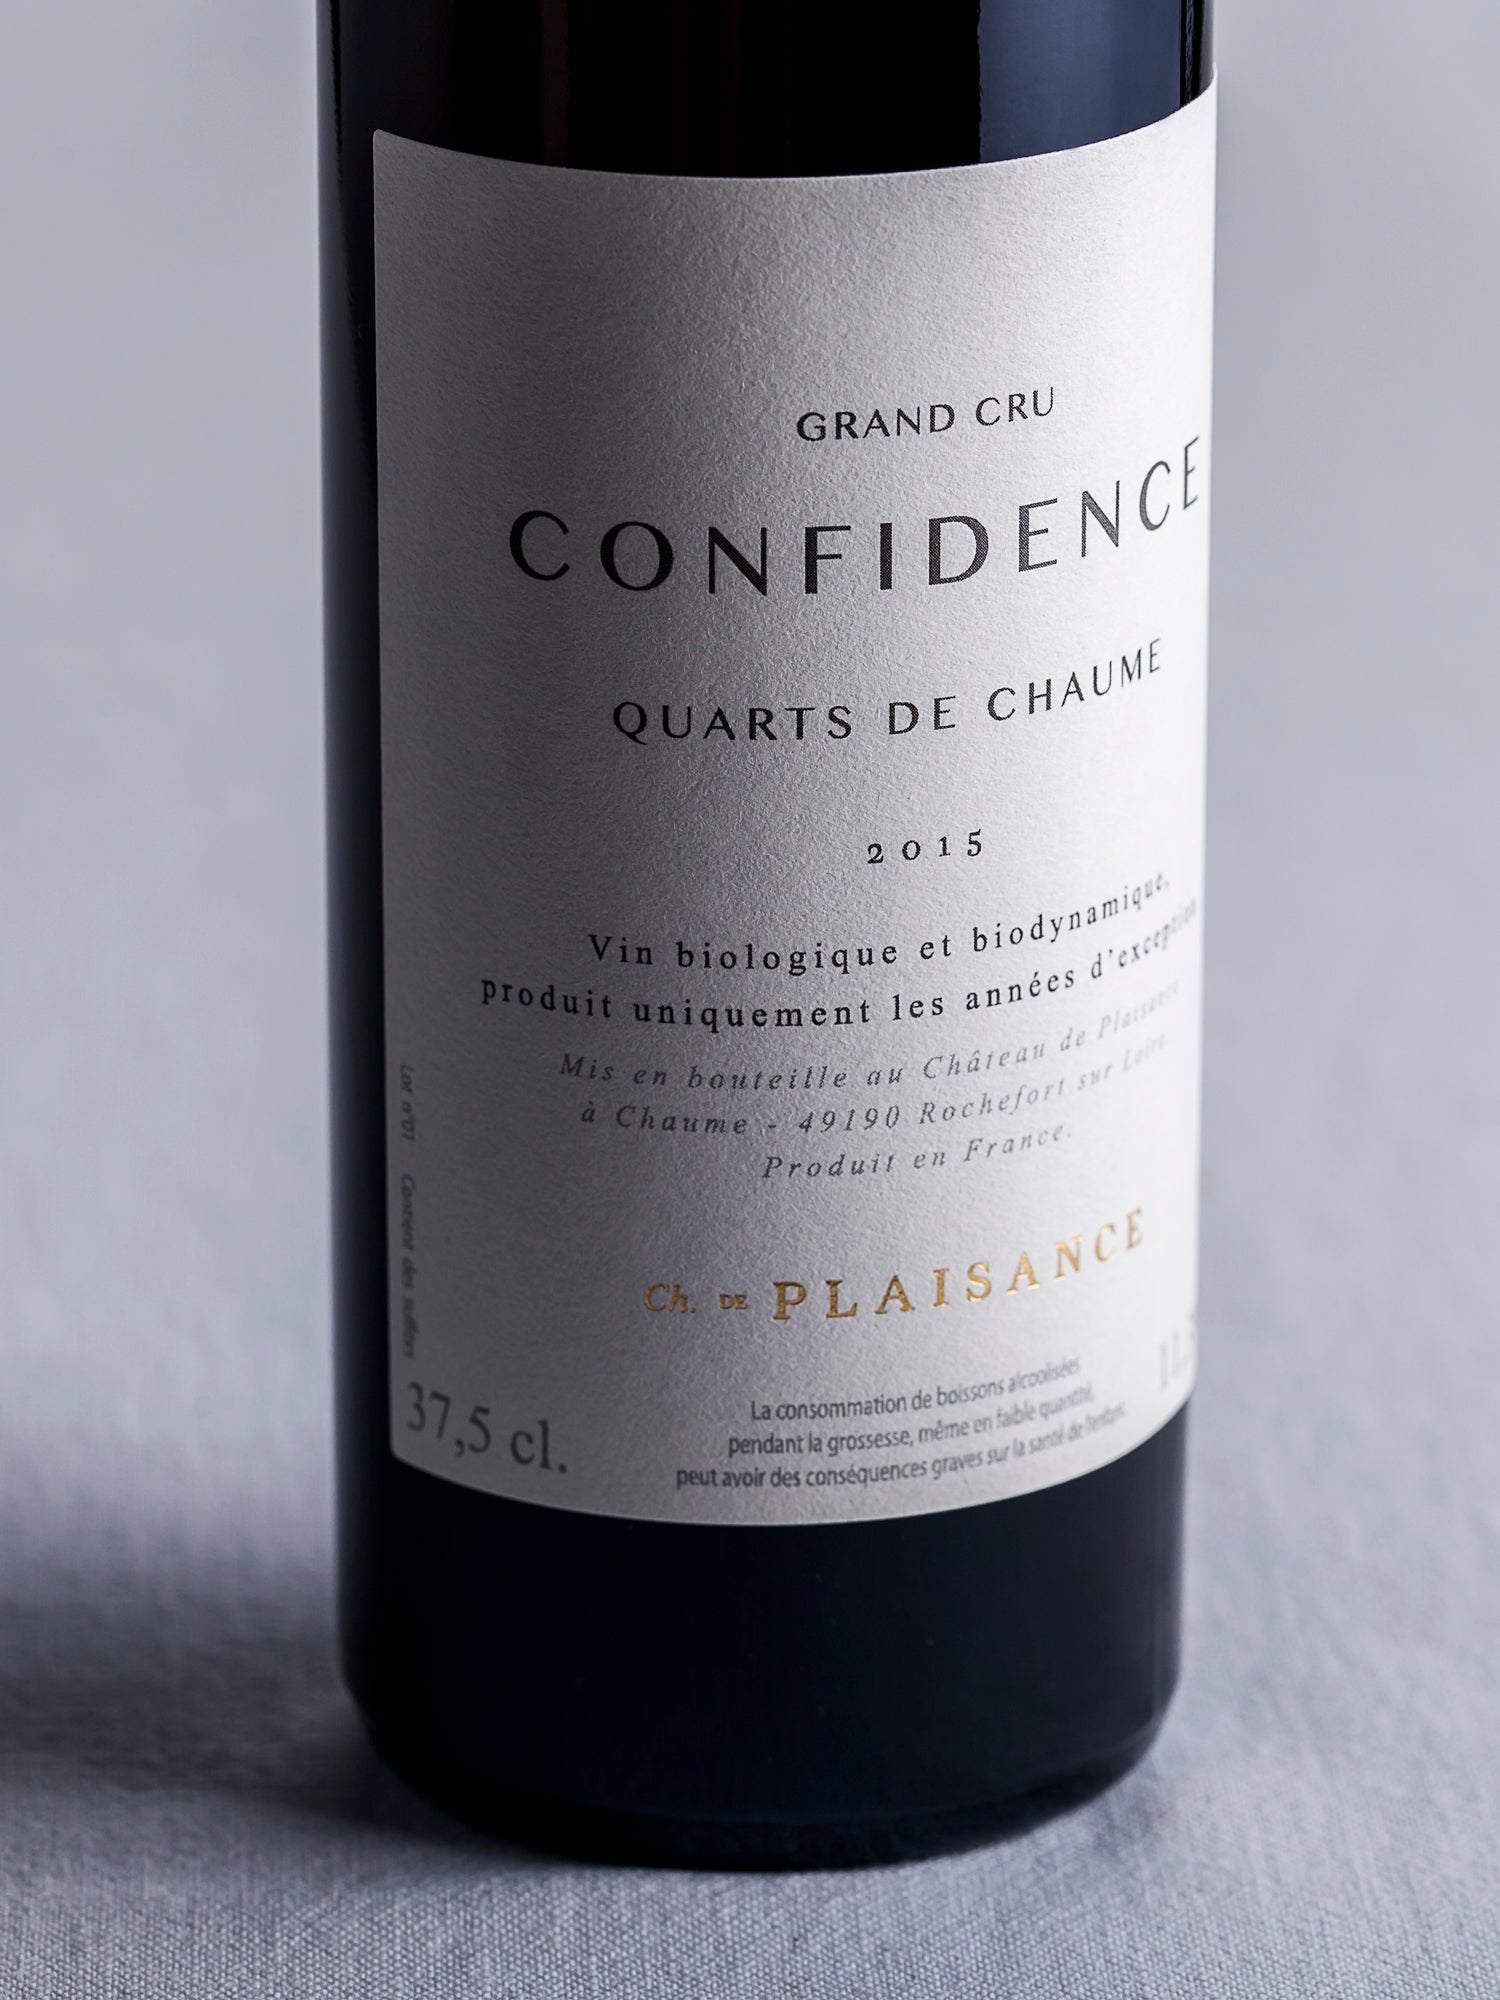 Quarts de Chaume "Confidence" 2015 - 37,5 cl